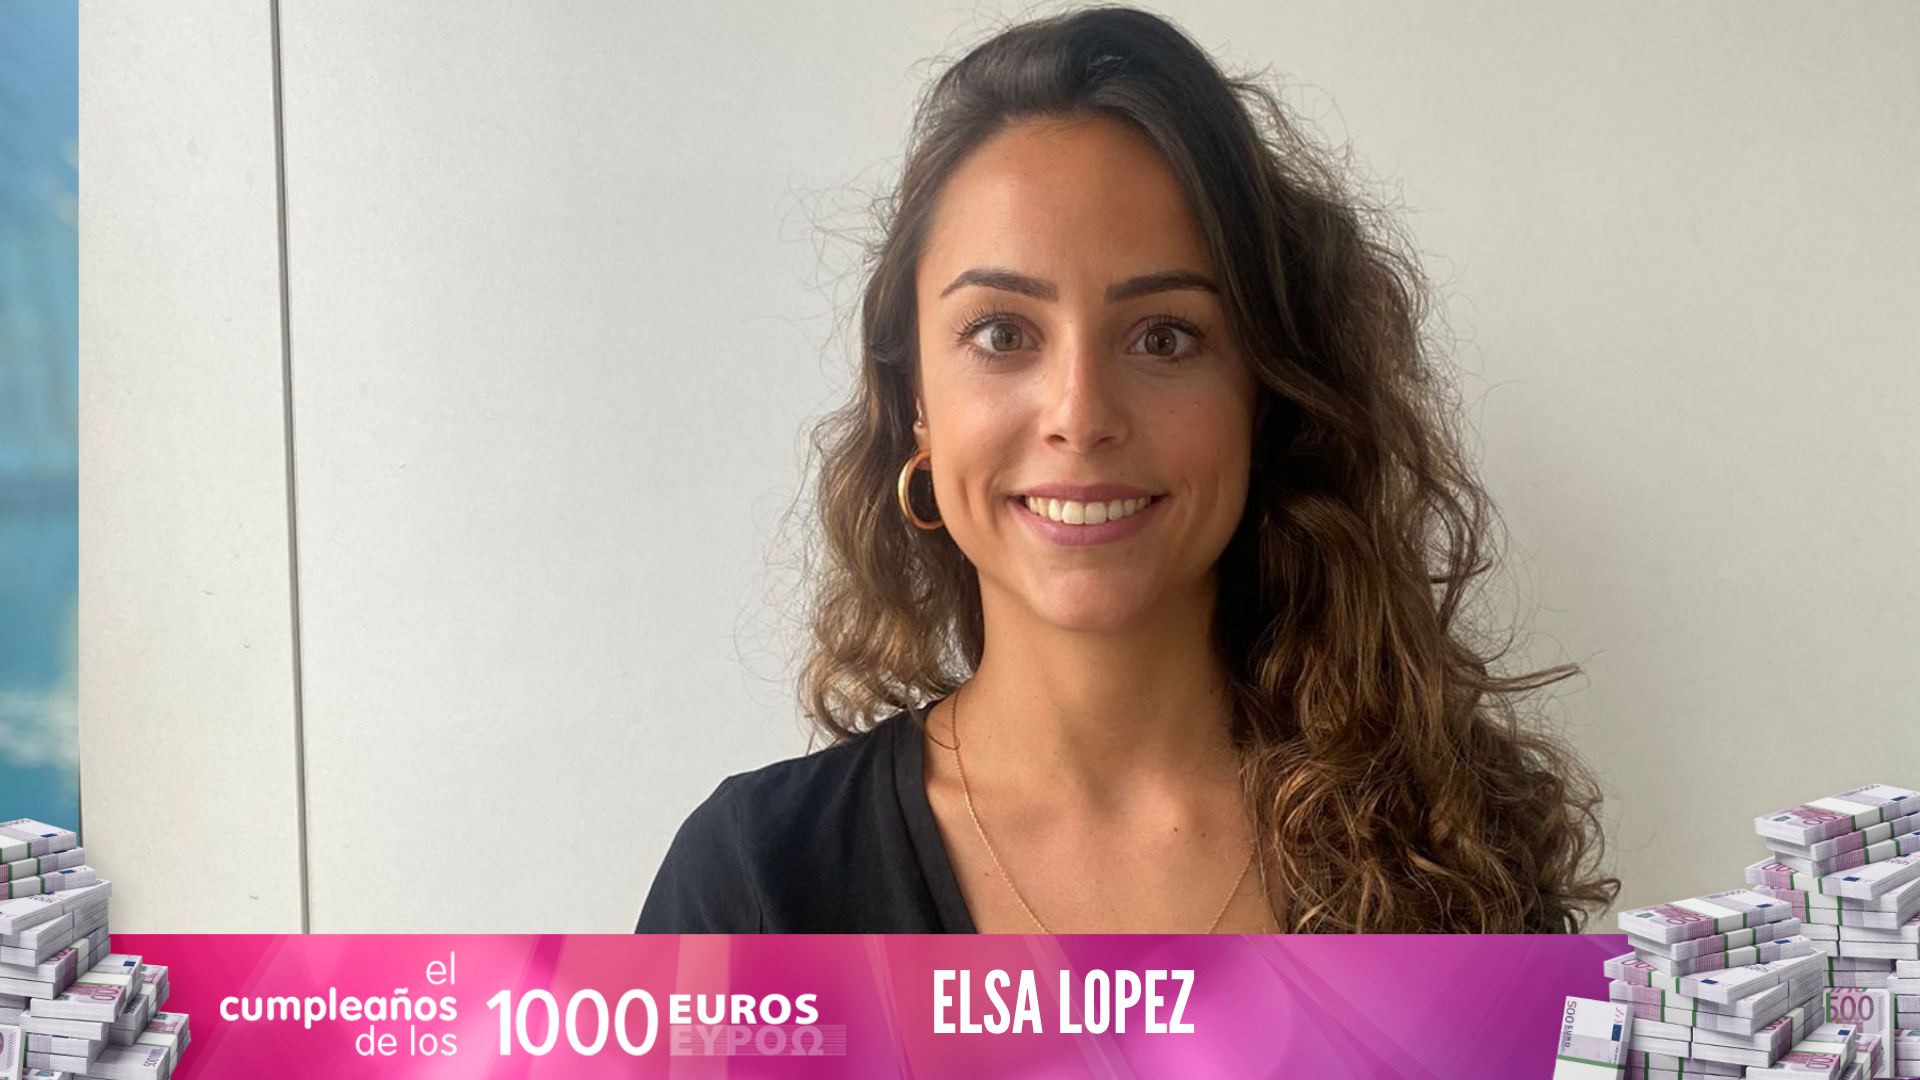 Elsa gana 1.000 euros: "He tenido un presentimiento: hoy nos toca"